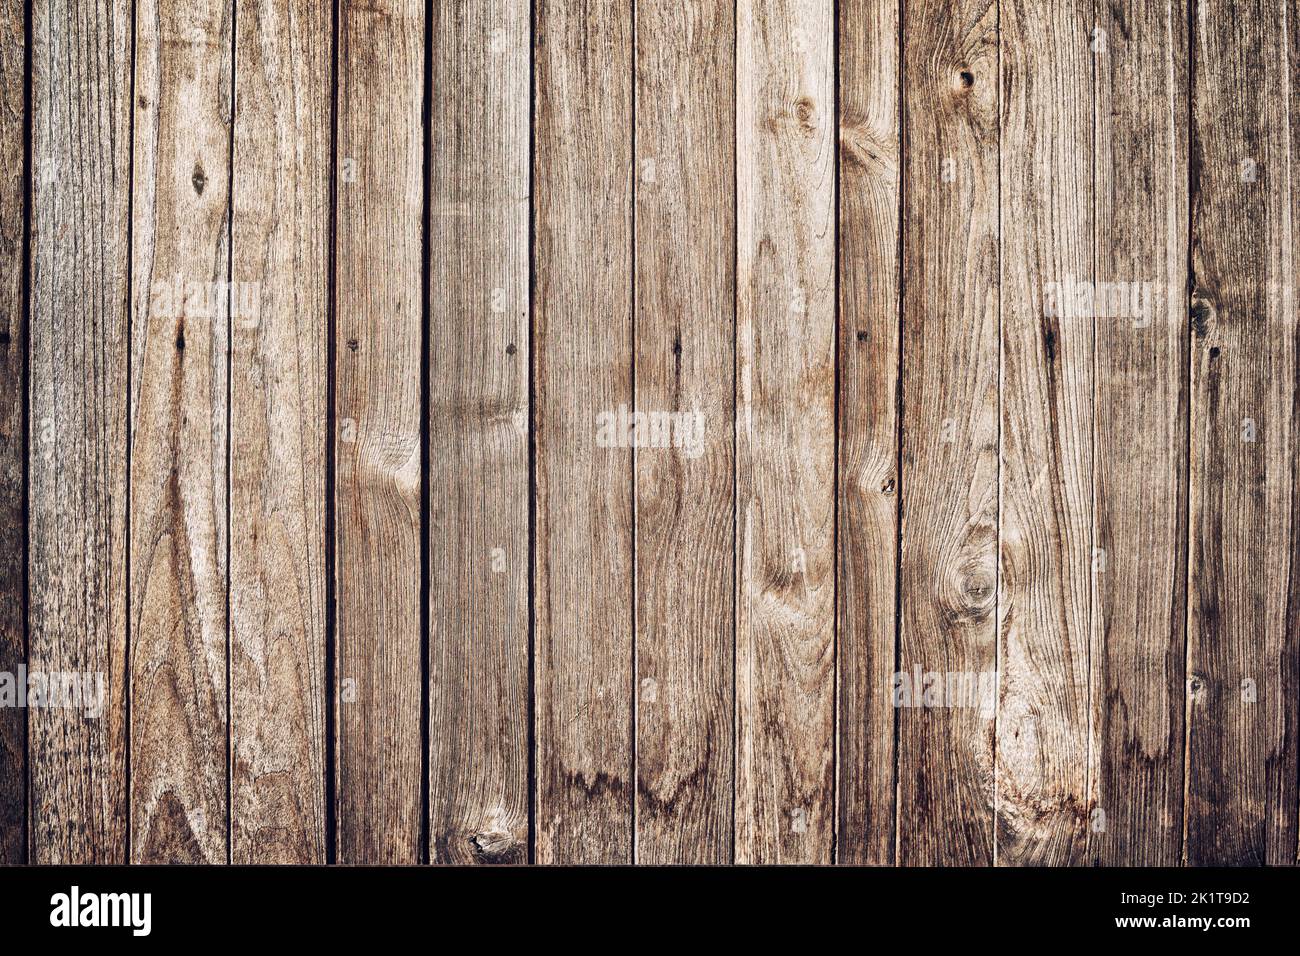 Arrière-plan de texture de panneau de bois.vue de dessus de bois antique avec des fissures. Texture et motif rustiques bruns pour toile de fond Banque D'Images